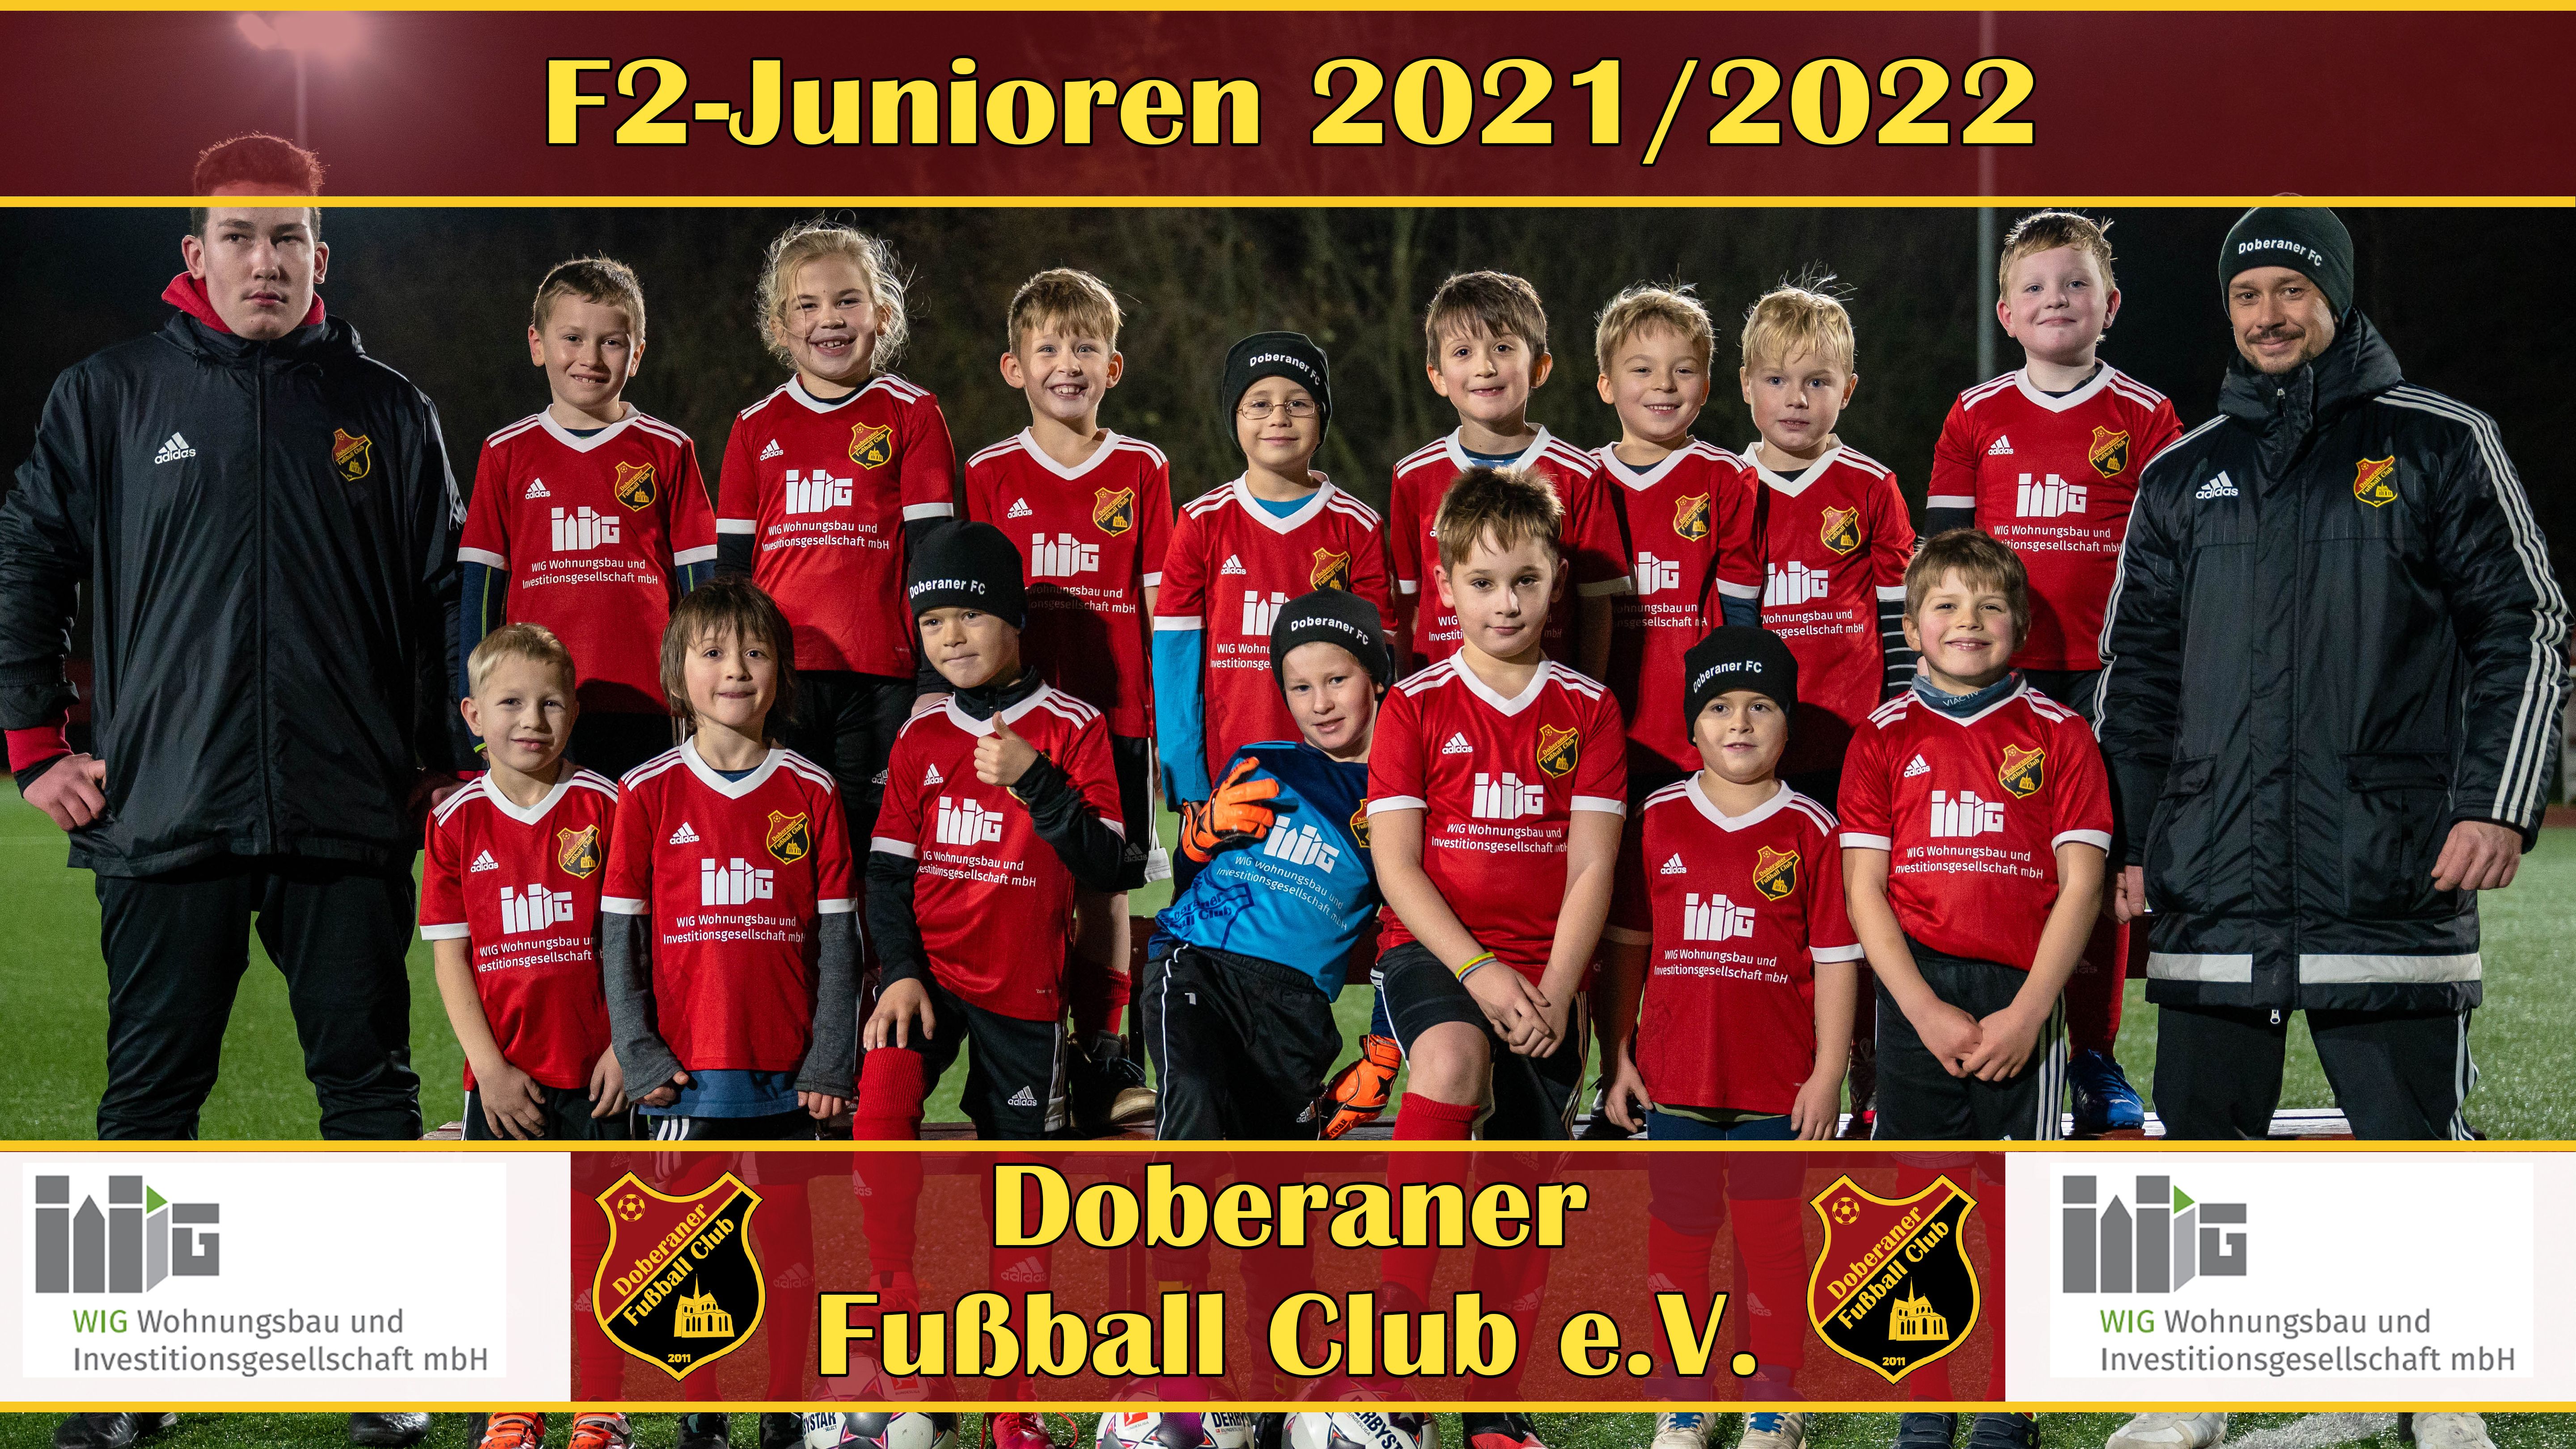 F2-Junioren 2021/2022